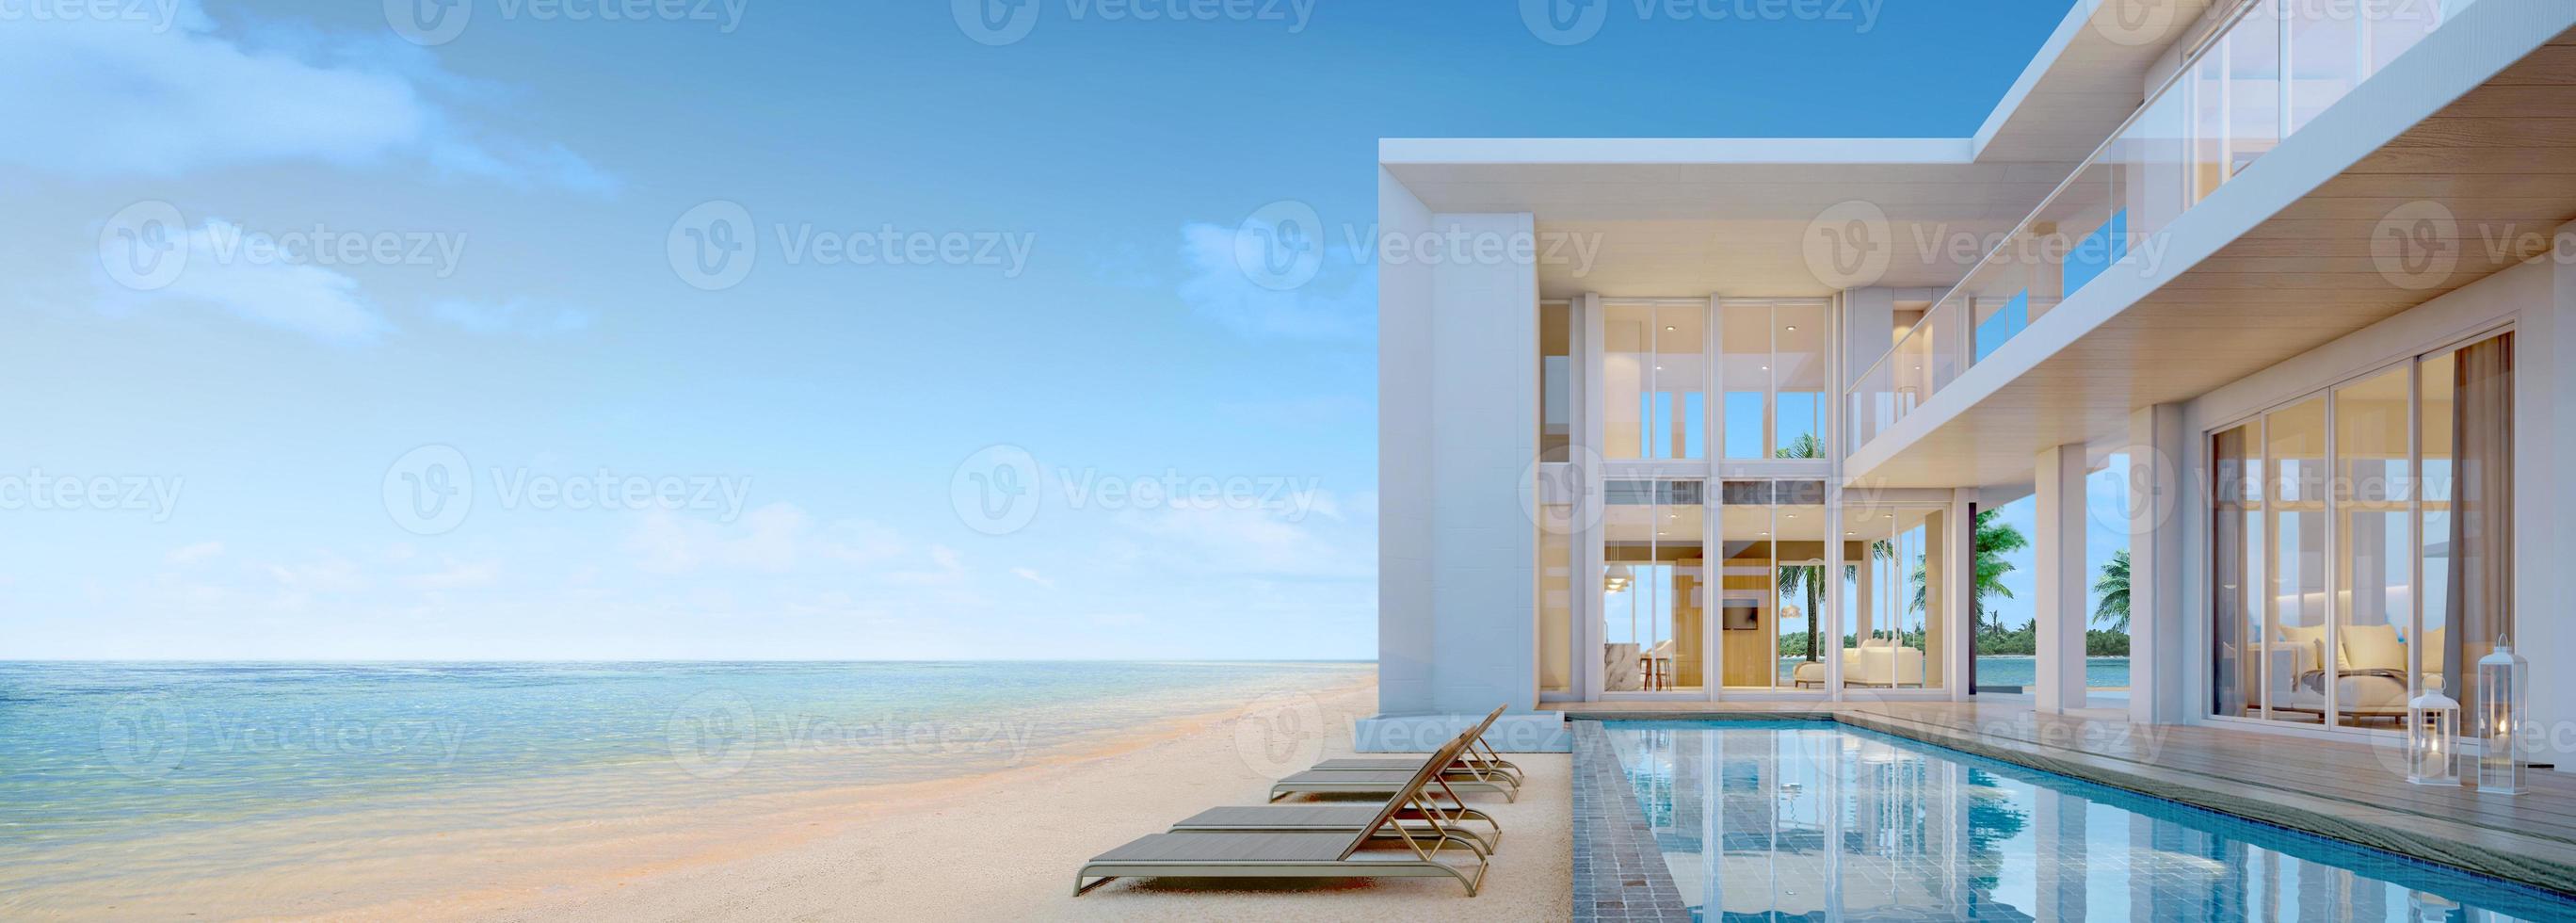 vista al mar. casa de playa moderna de lujo con piscina y tumbona para casa de vacaciones u hotel. Representación 3d foto